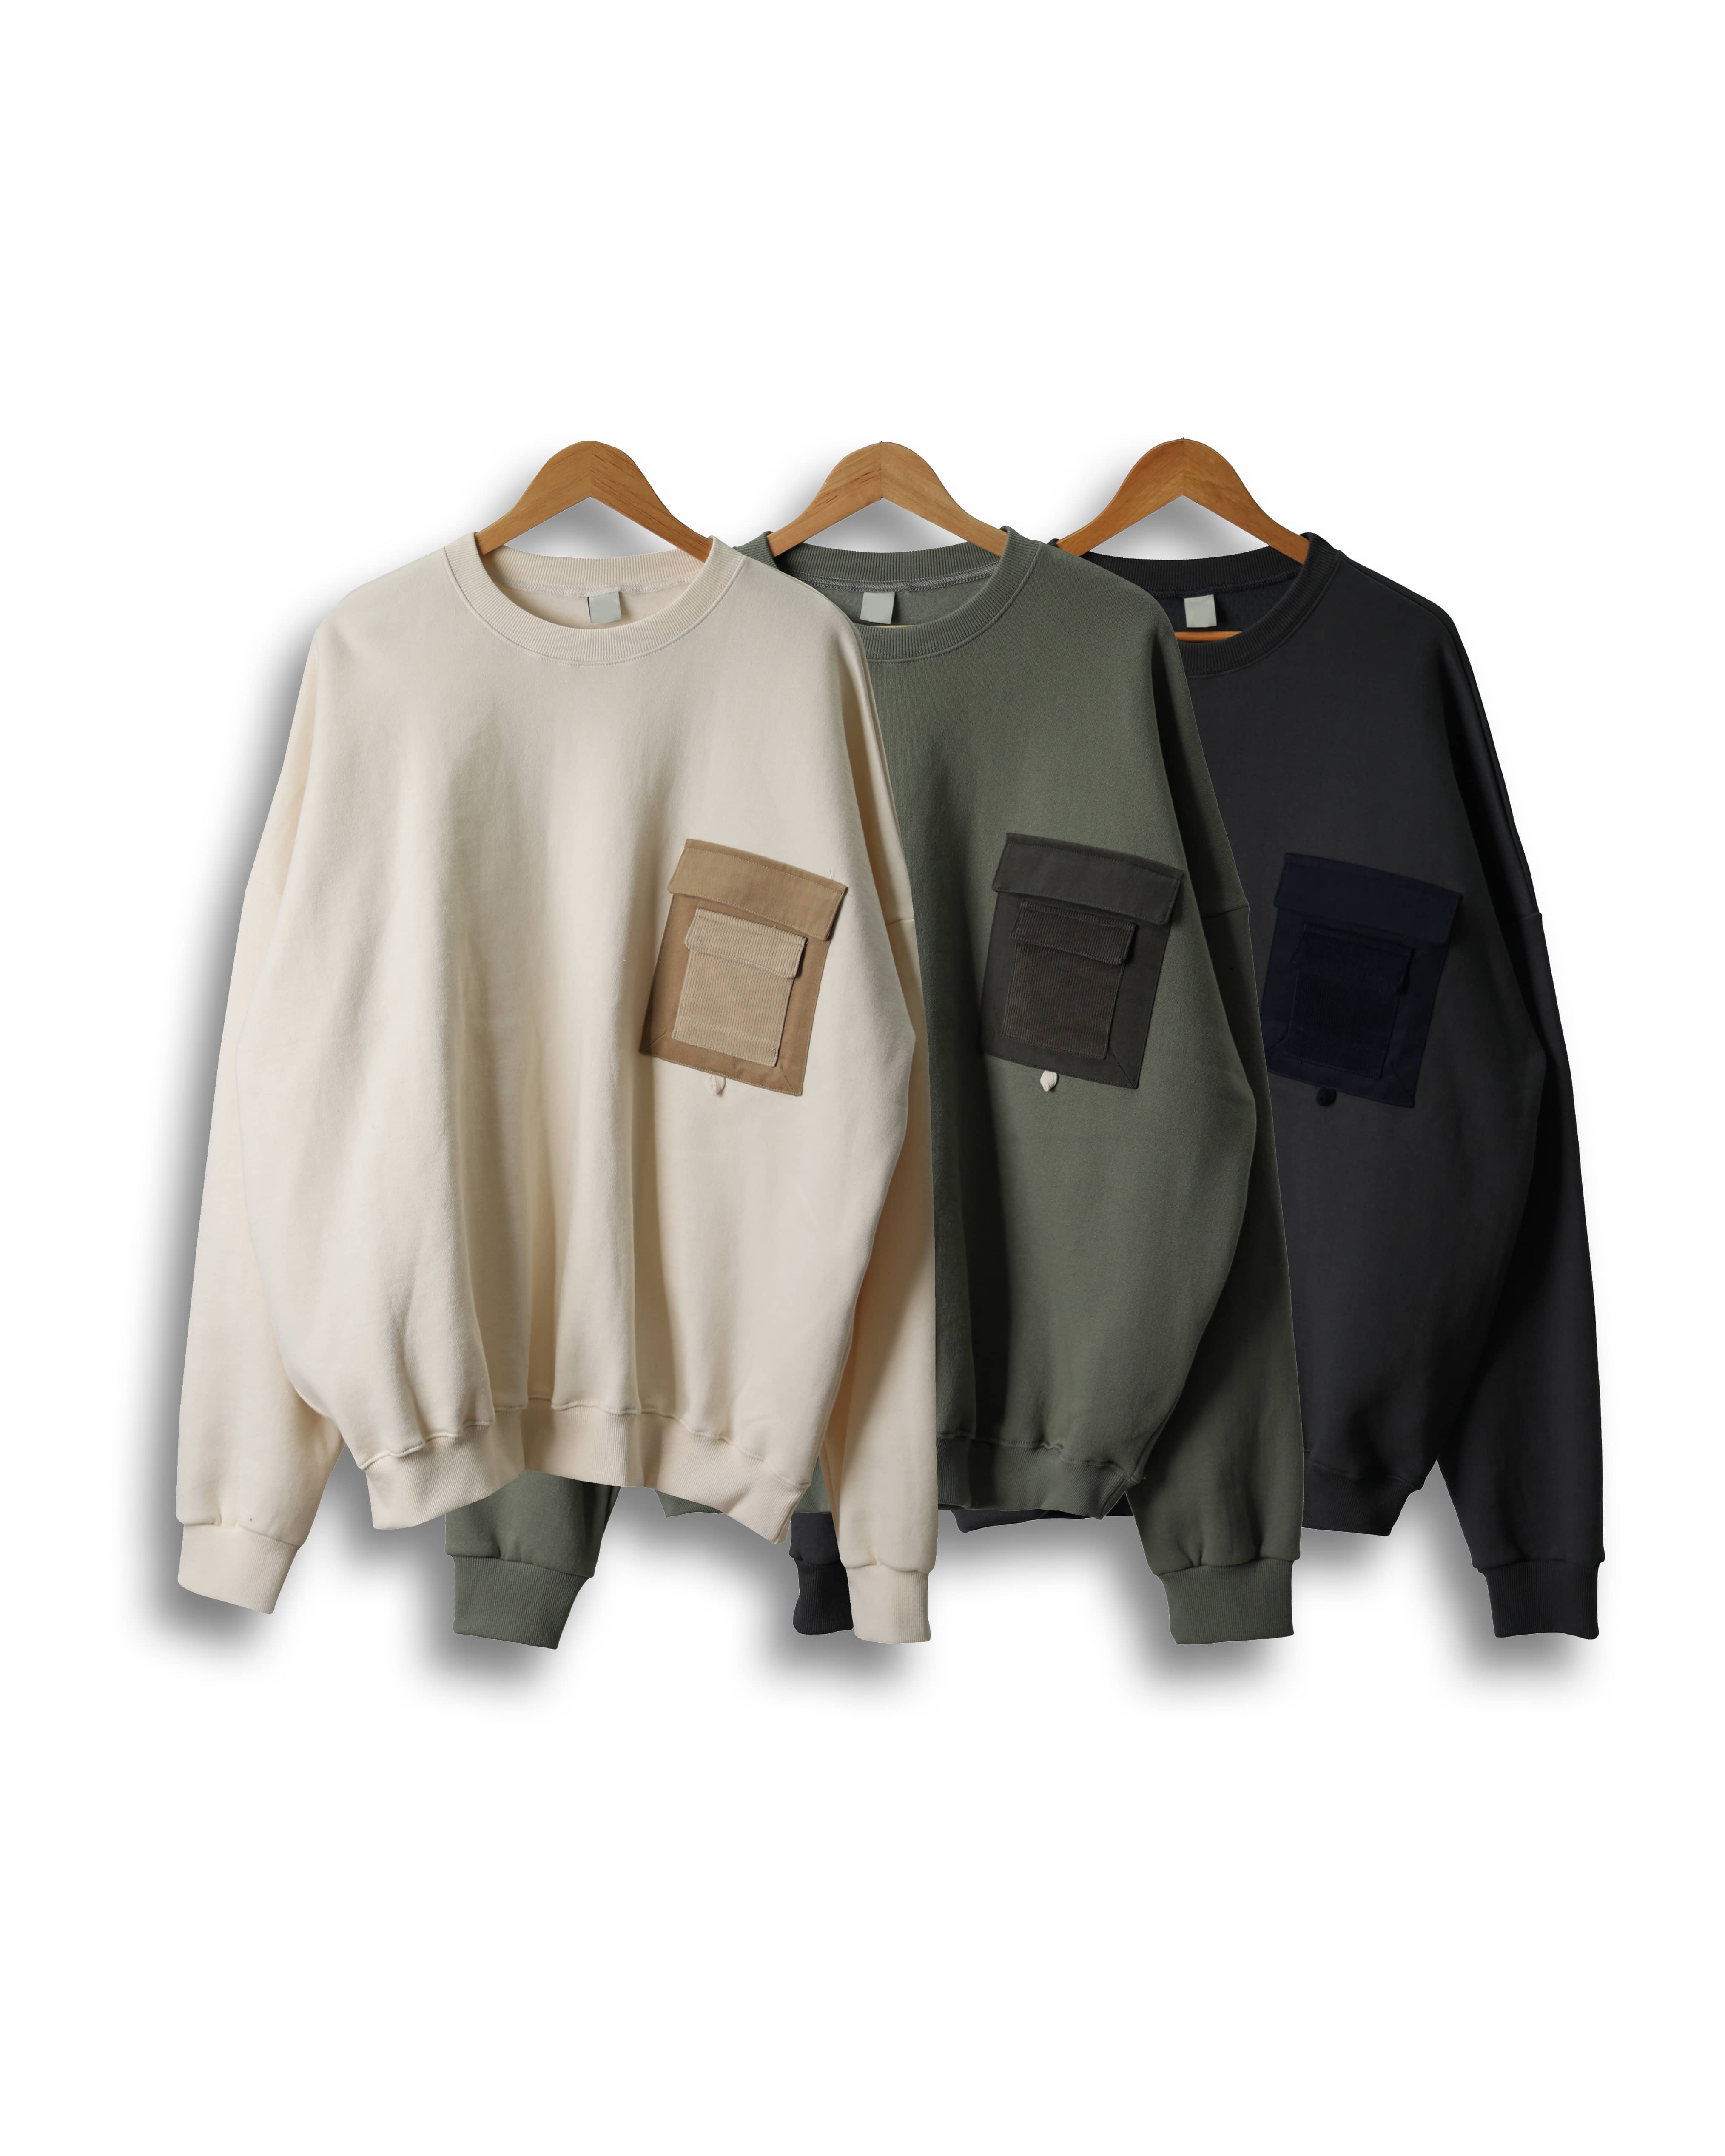 RAM Diment Layered Pocket Sweat Shirts (Charcoal/Khaki/Ivory)